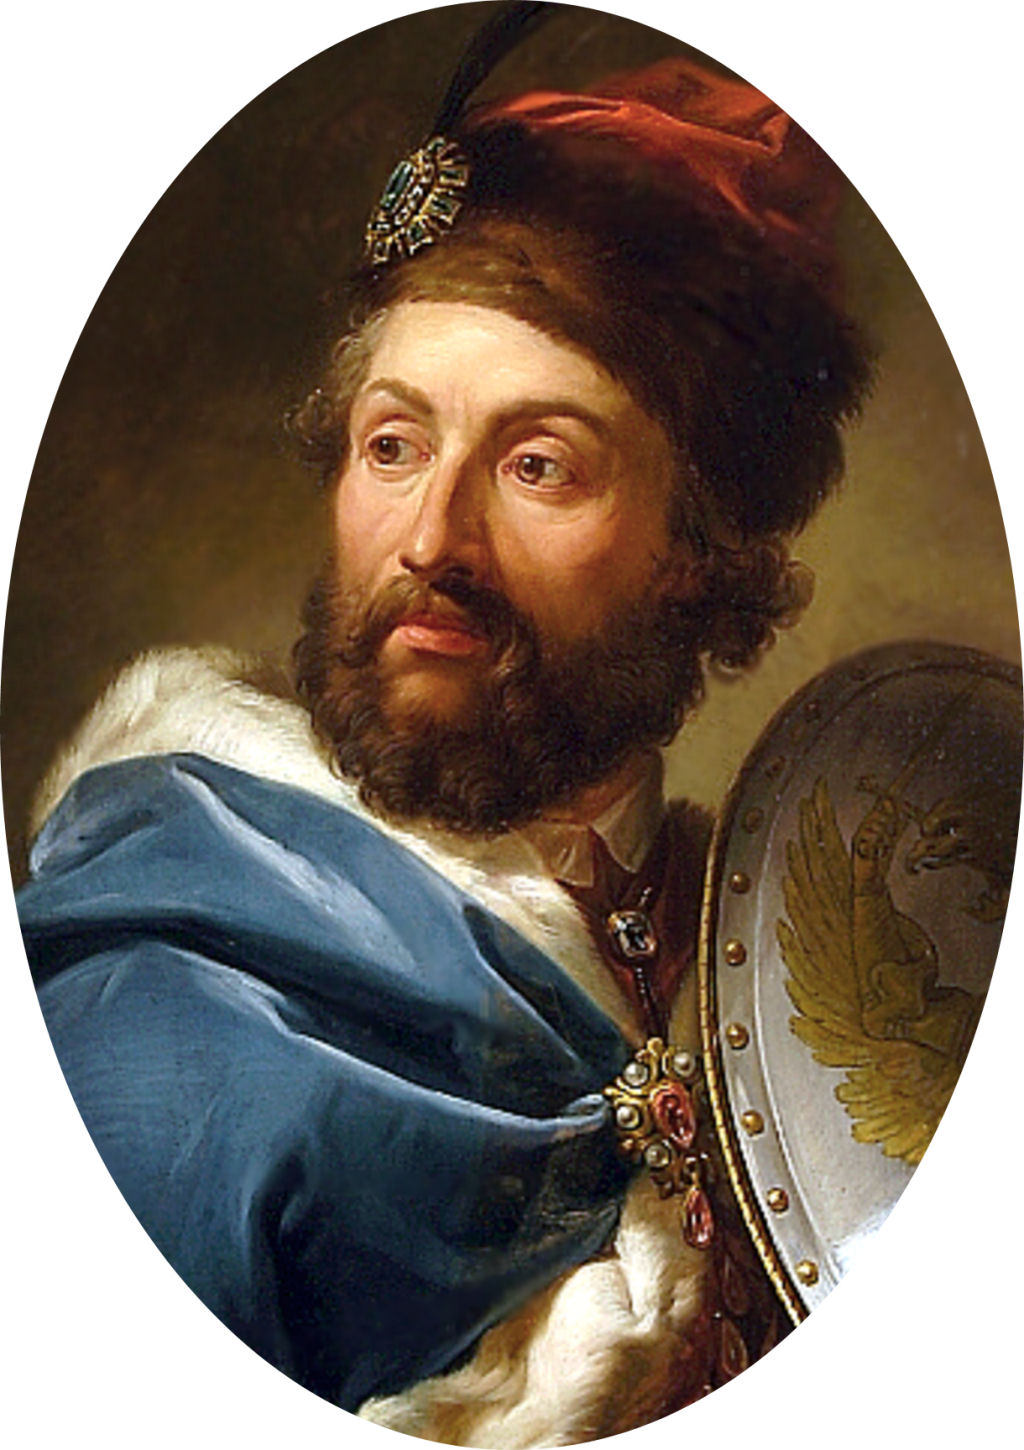 A Maldio do Rei Casimiro IV Jagelo da Polnia